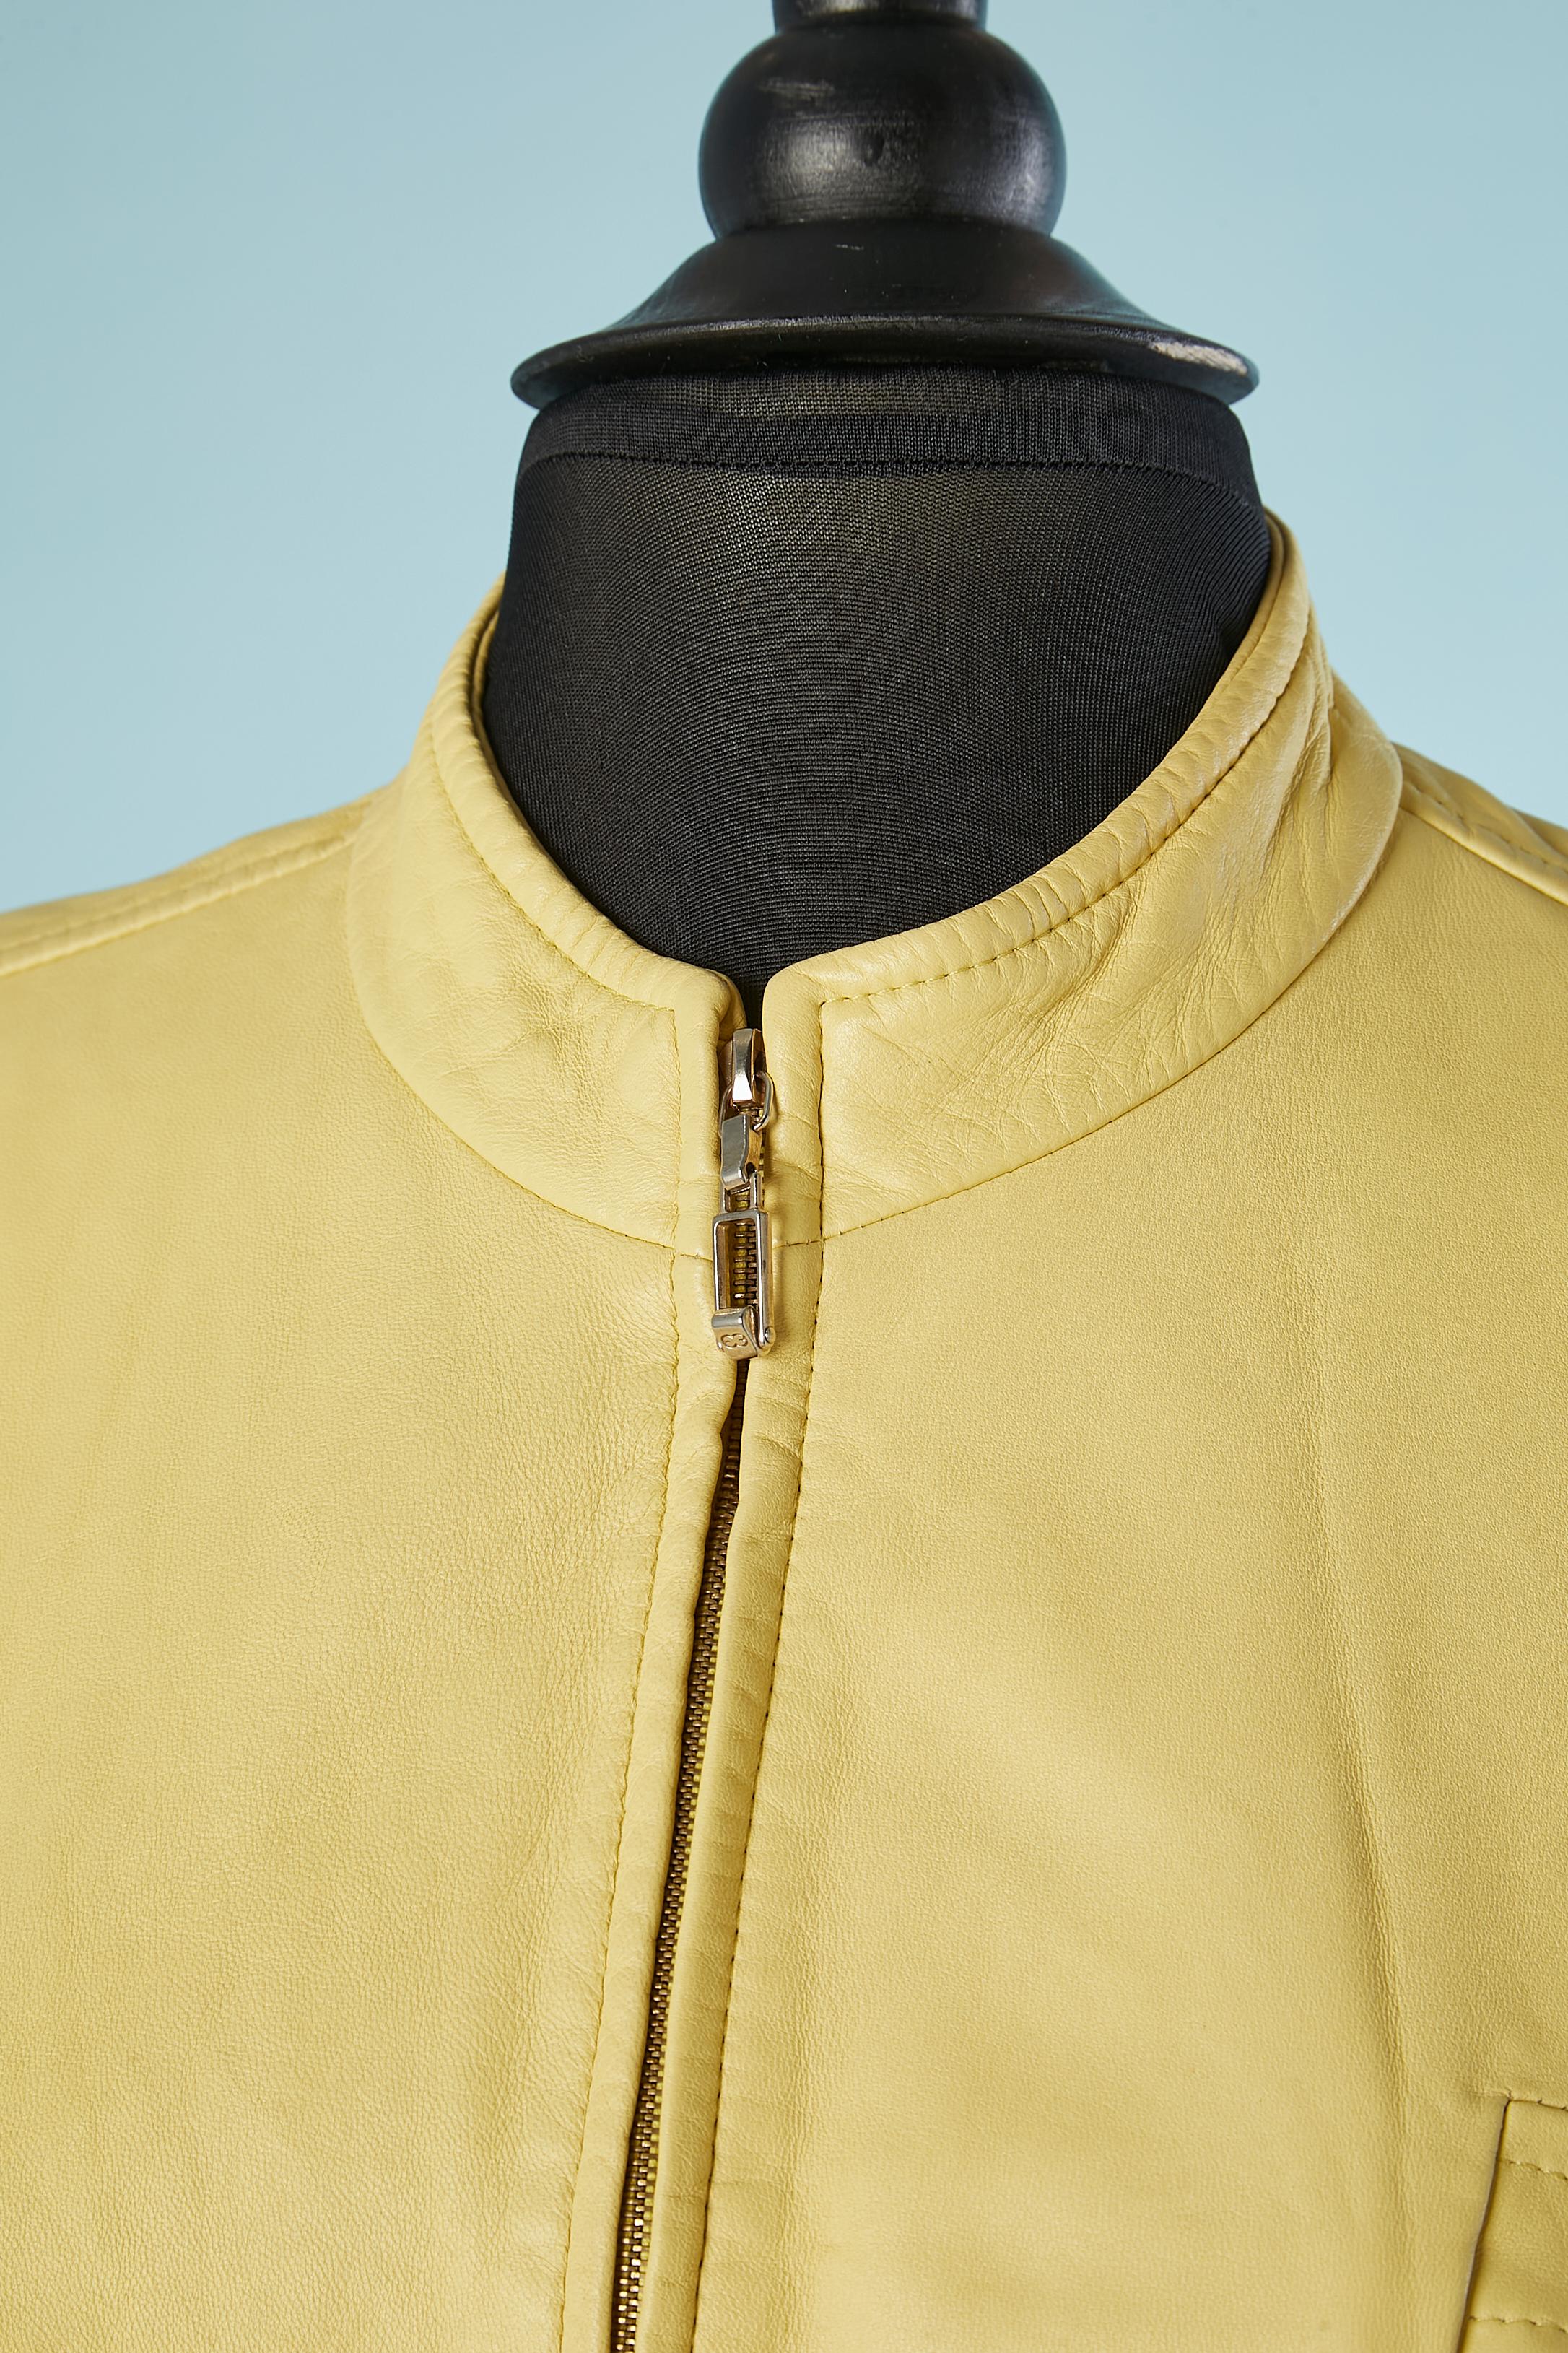 Gelbe Lederjacke mit Reißverschluss vorne in der Mitte. Futter aus Rayon mit Markenzeichen. Schulterpads. Brusttaschen mit Reißverschluss. 
GRÖSSE 40